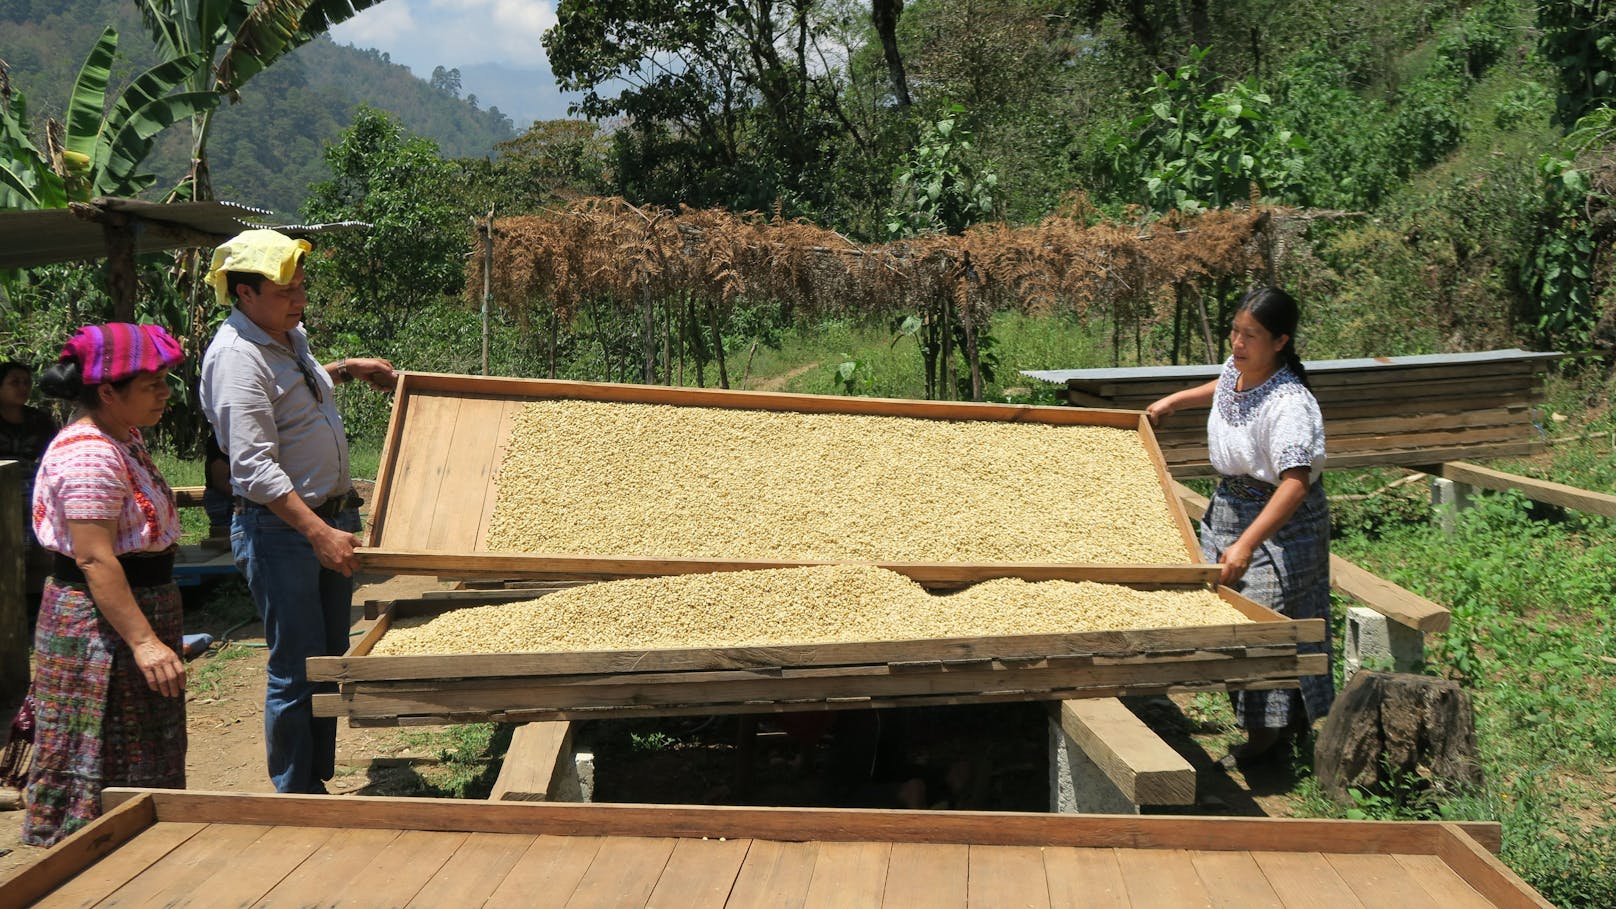 Qbo bringt eine limitierte Kaffee-Edition aus Guatemala auf den Markt.